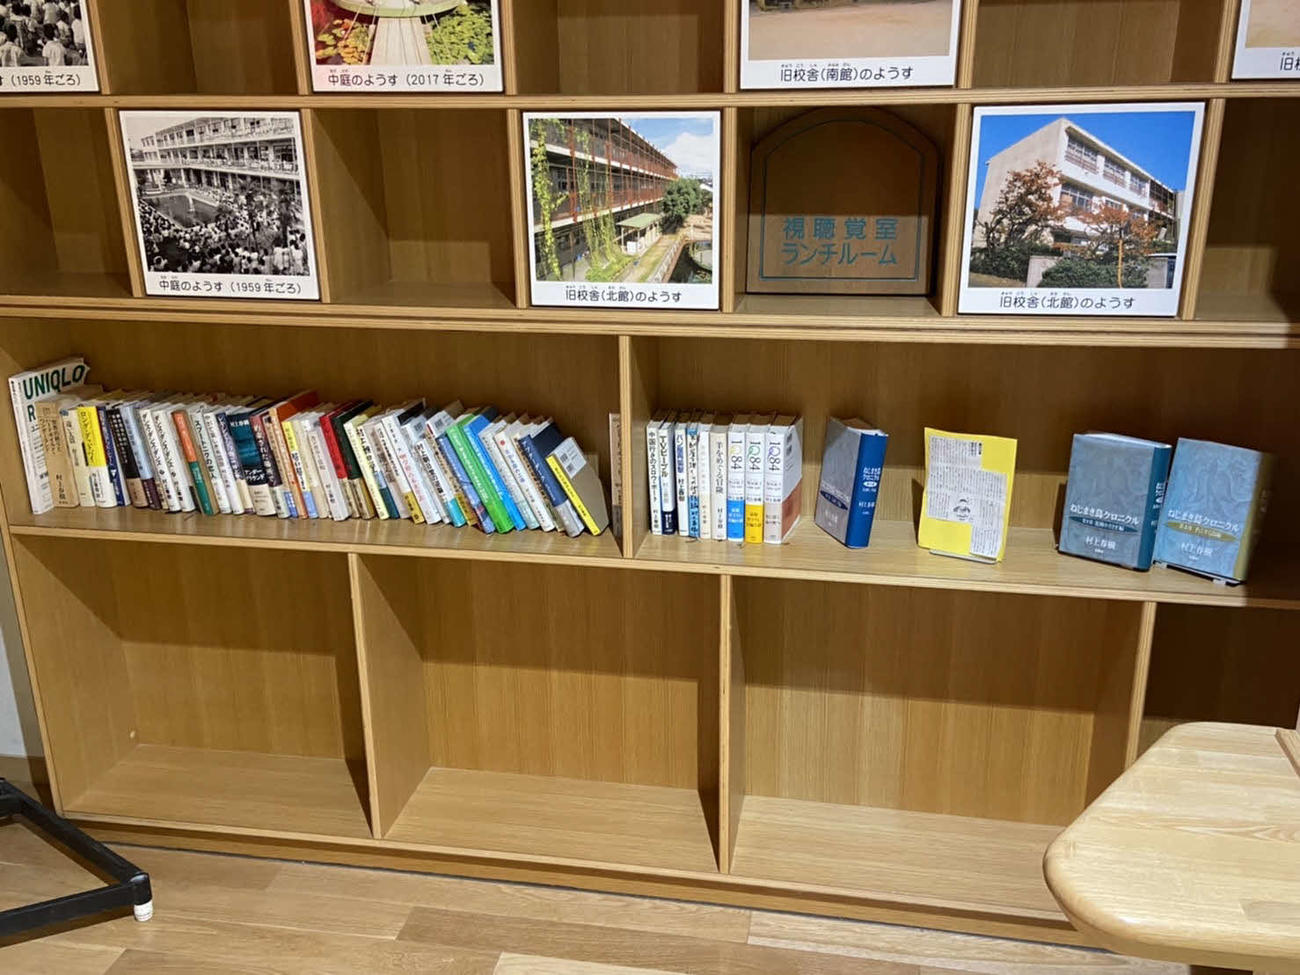 村上春樹さんの母校である兵庫・西宮市立香櫨園小学校に置かれている、村上さんの著書